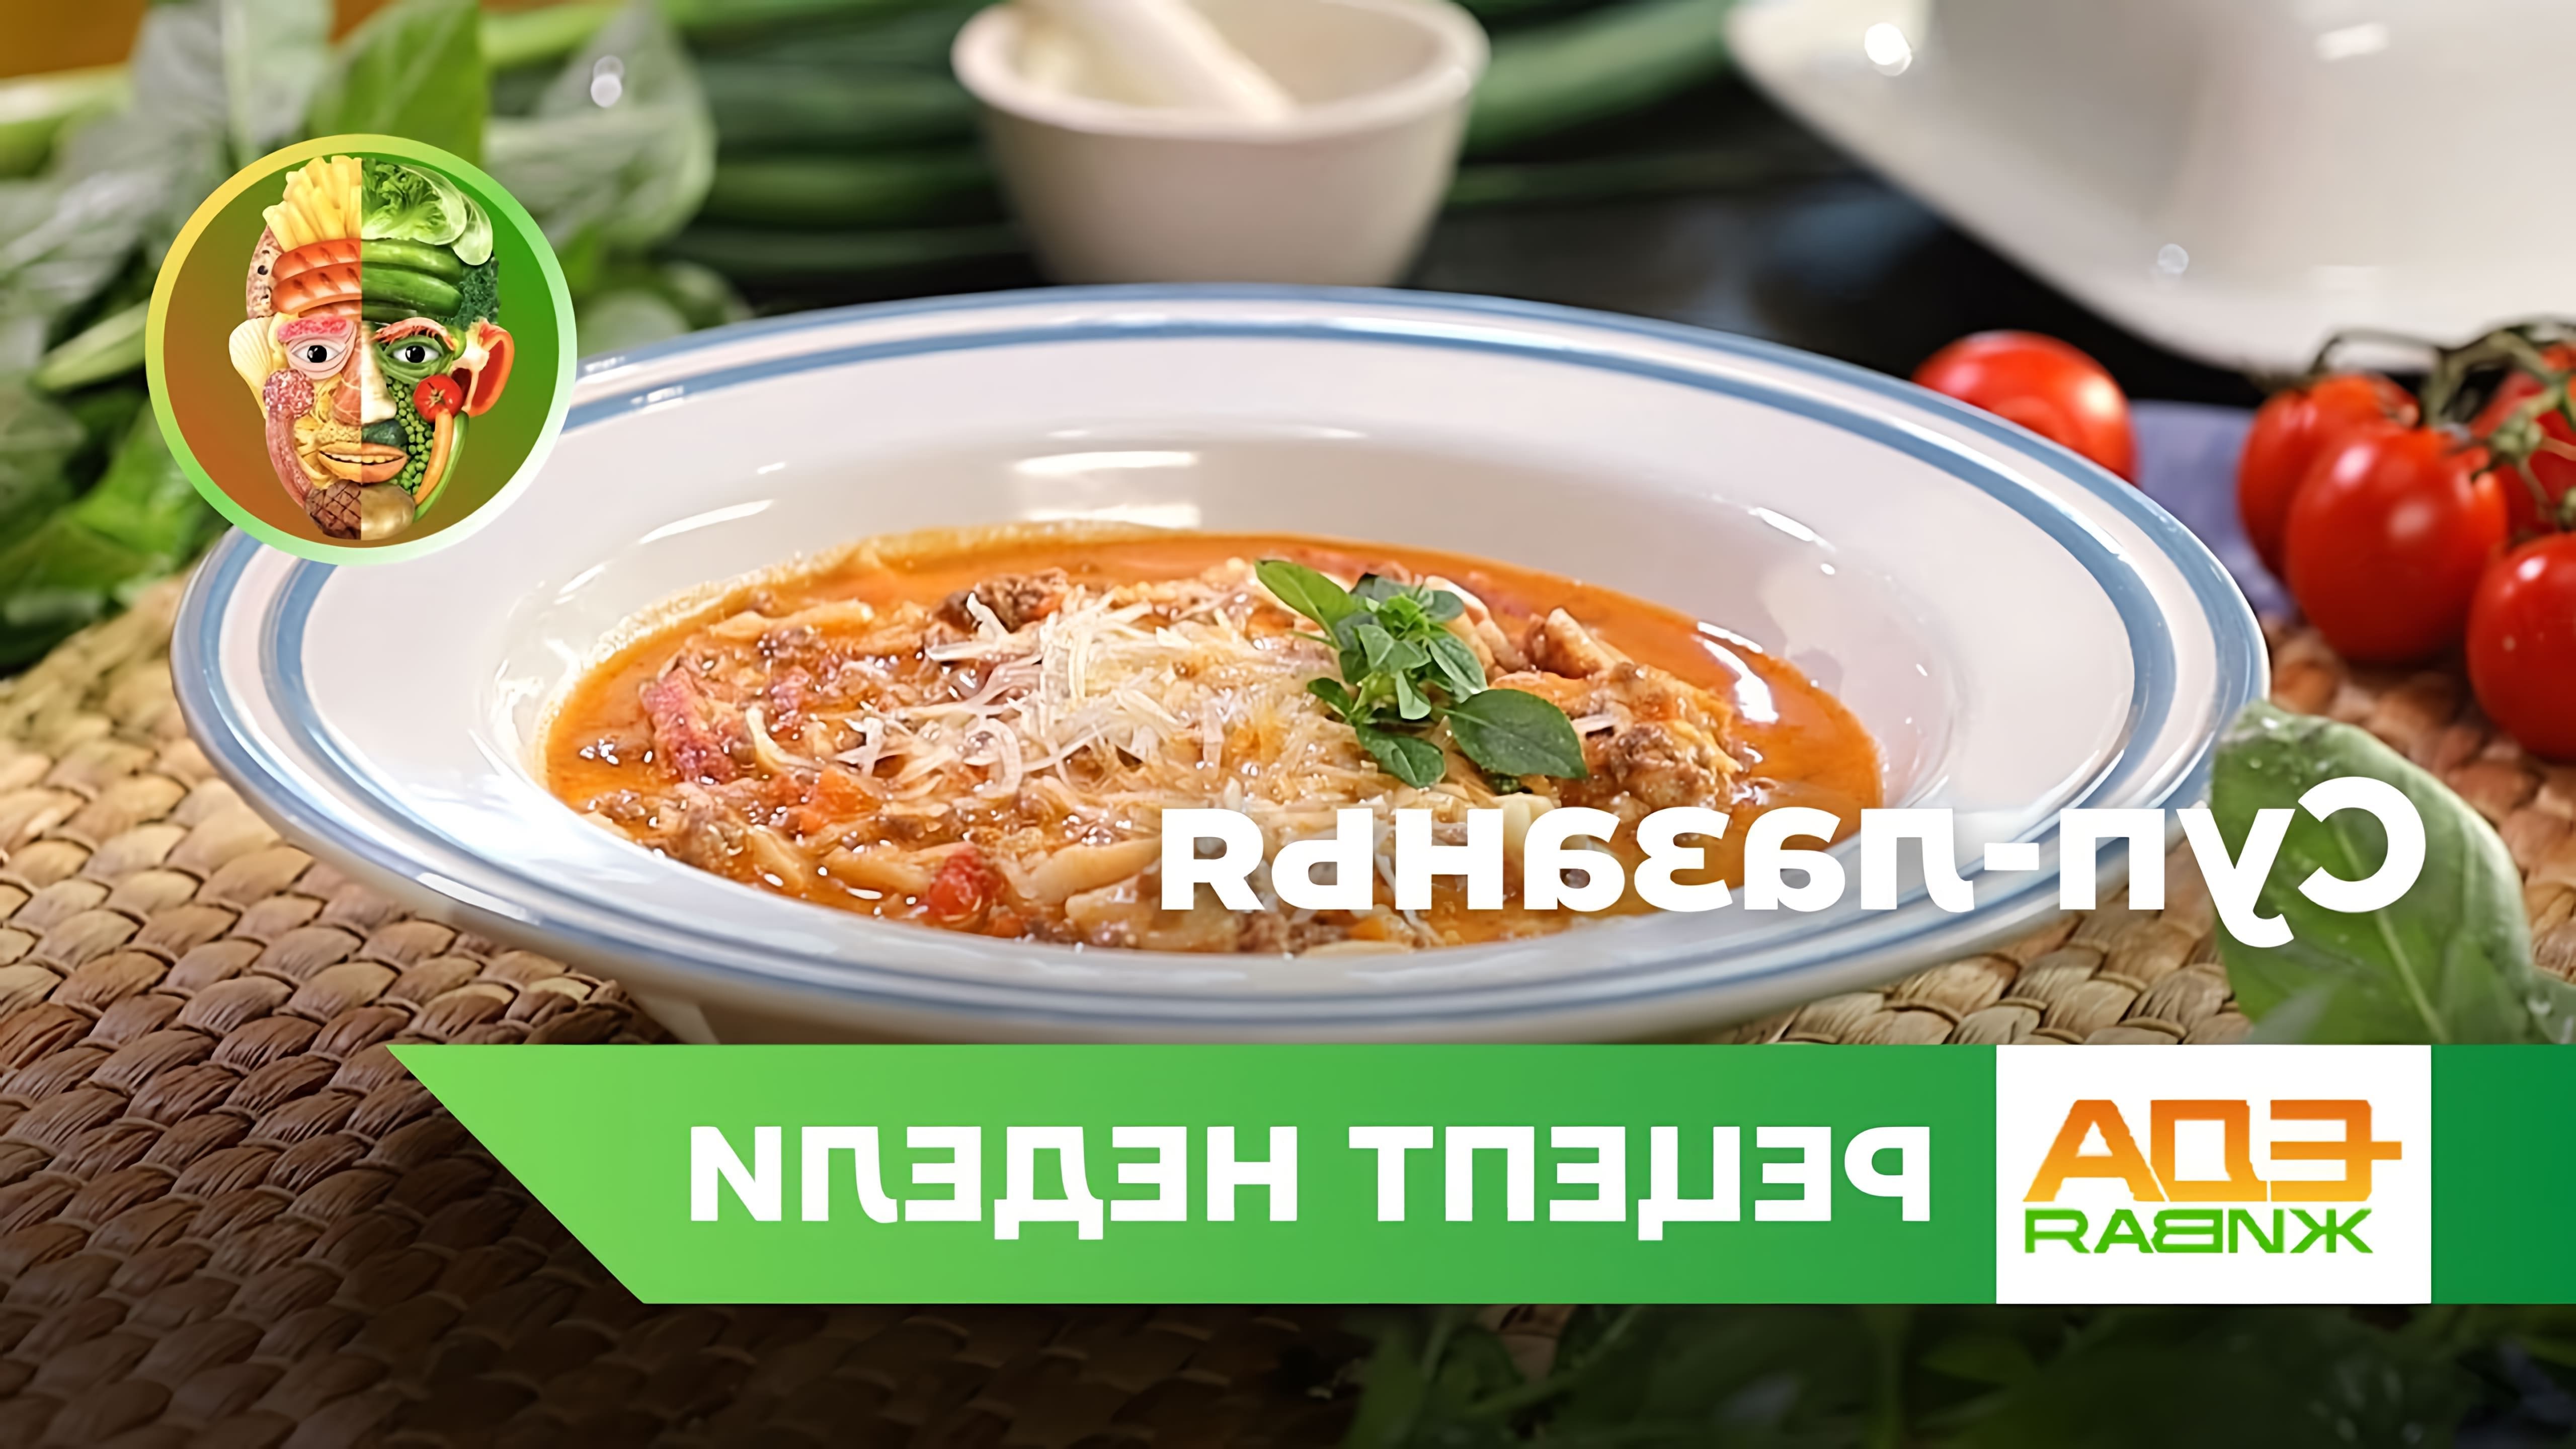 В этом видео демонстрируется рецепт супа-лазаньи, который является вариацией итальянской слоёной пасты лазанья